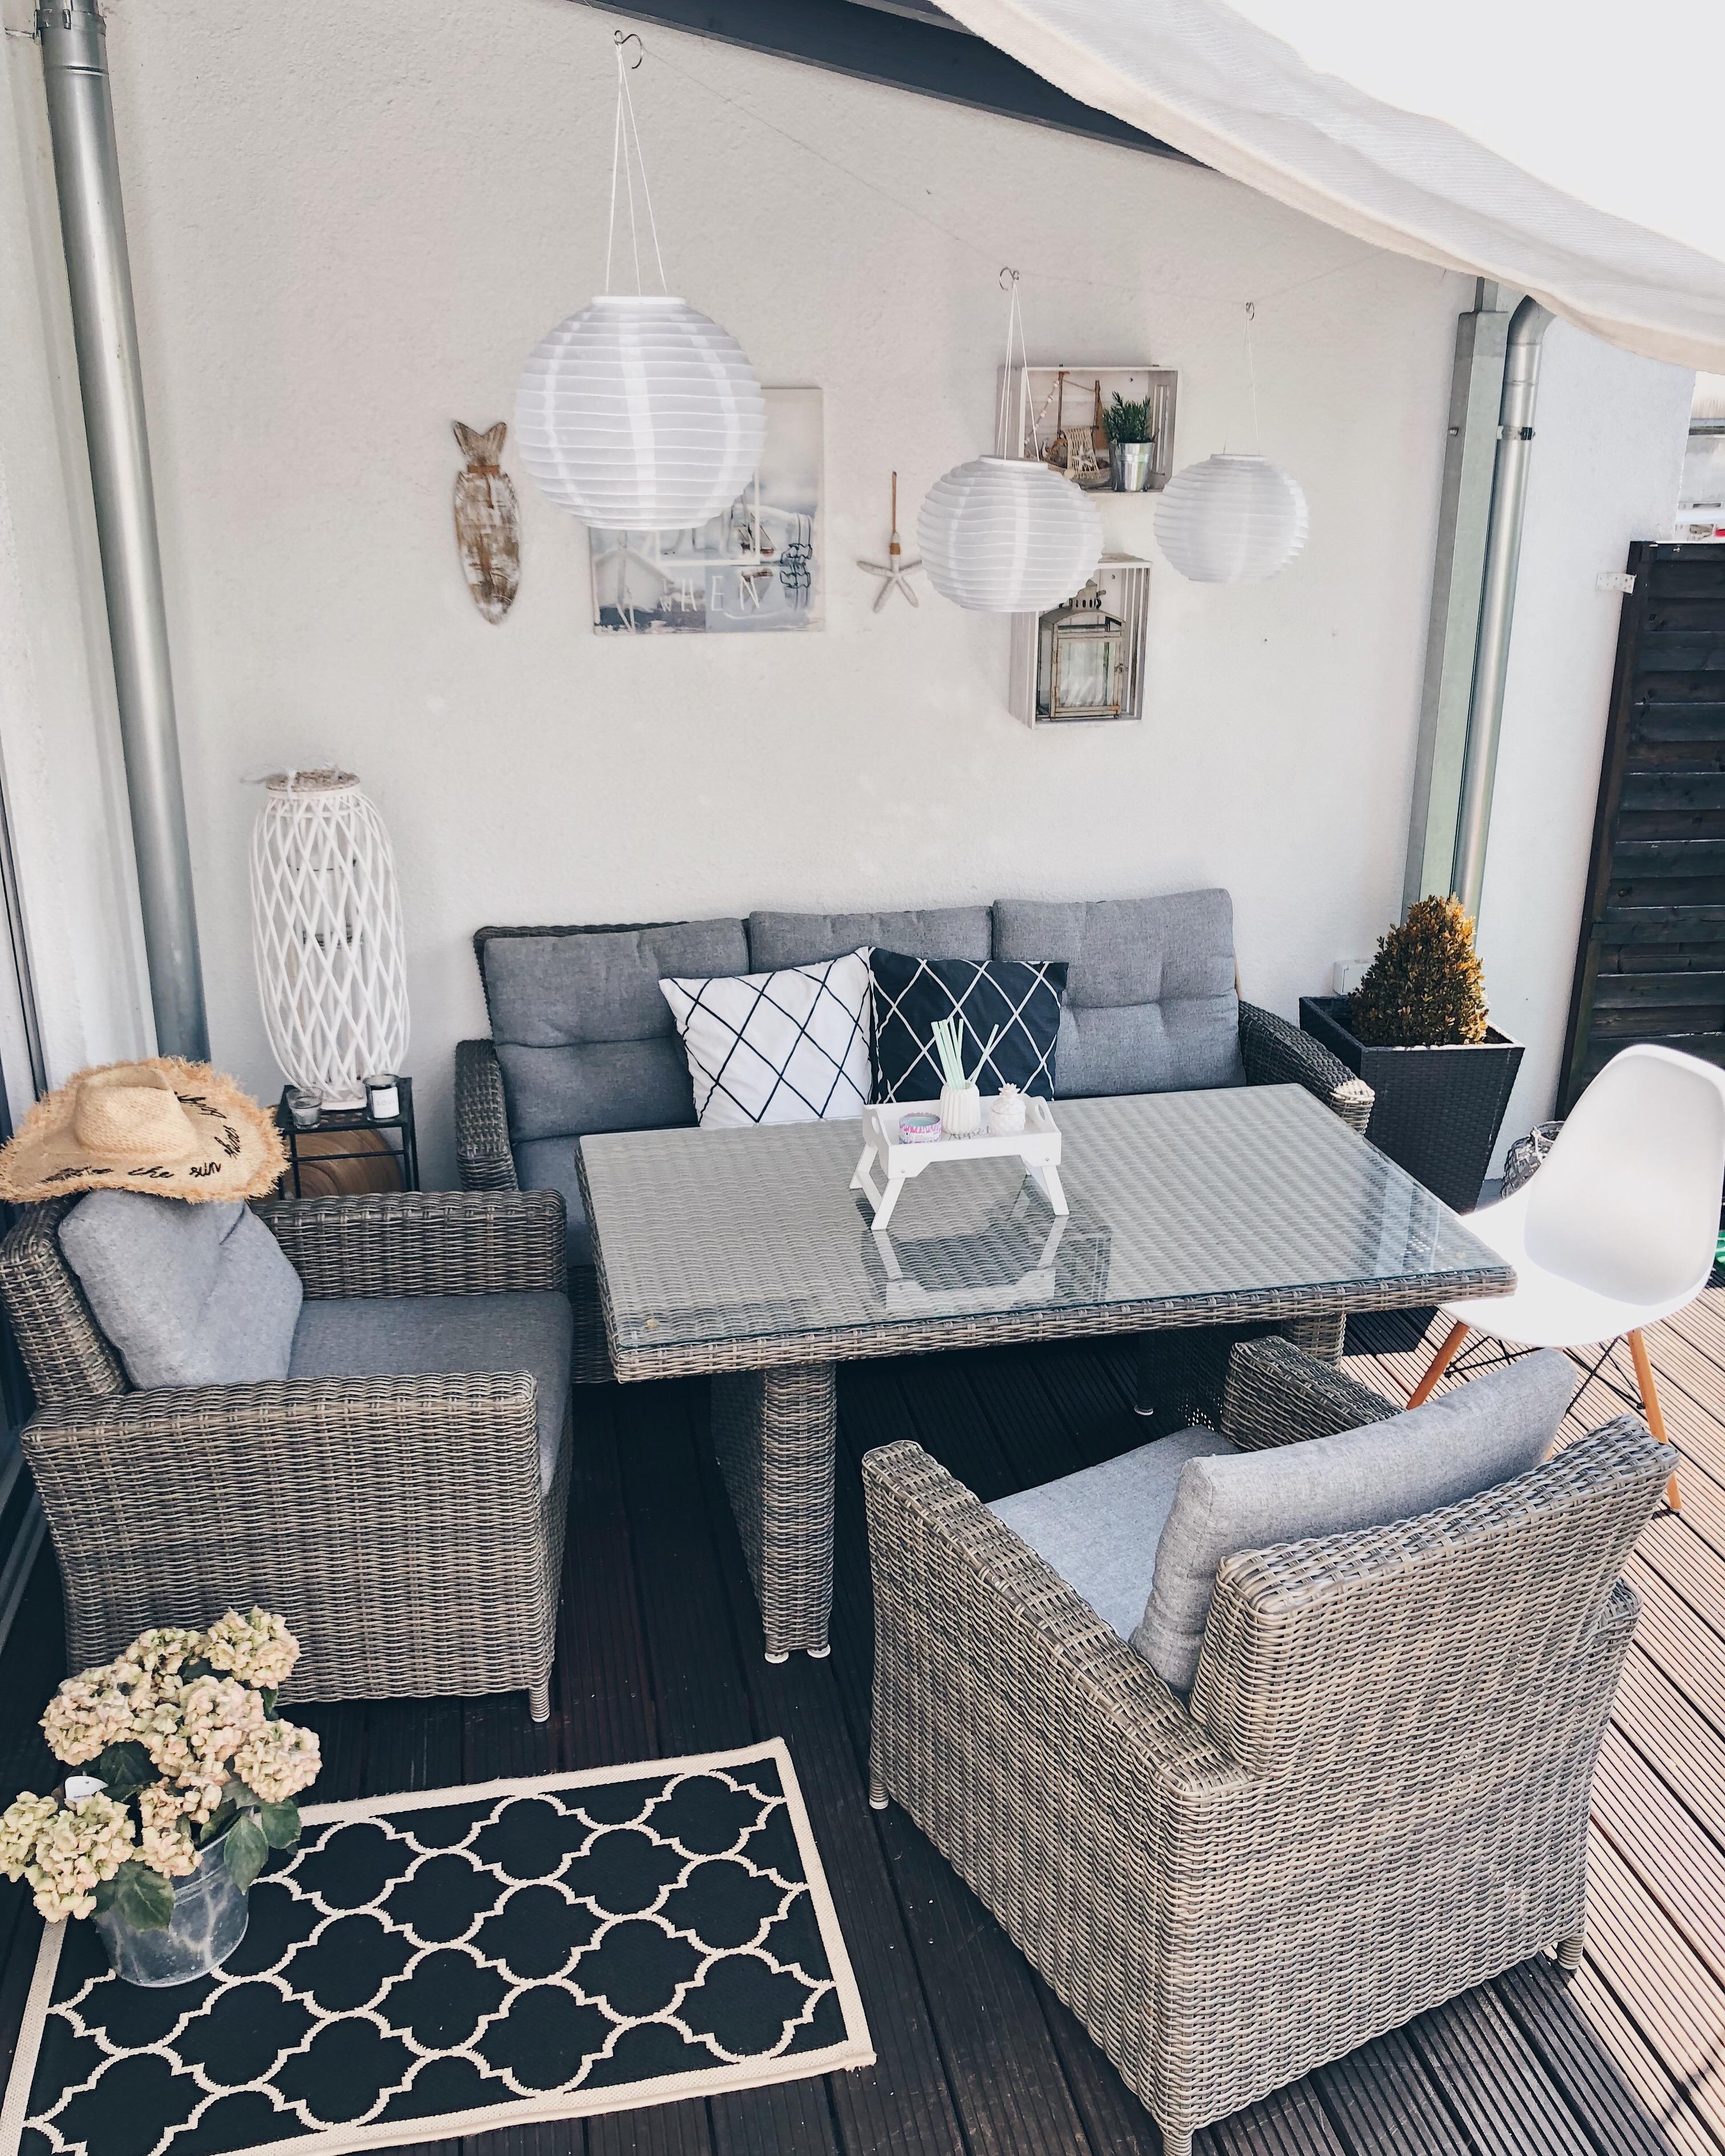 Unsere Dining-Lounge auf der Terrasse 💚 #outdoor #terrasse #terrassenmöbel